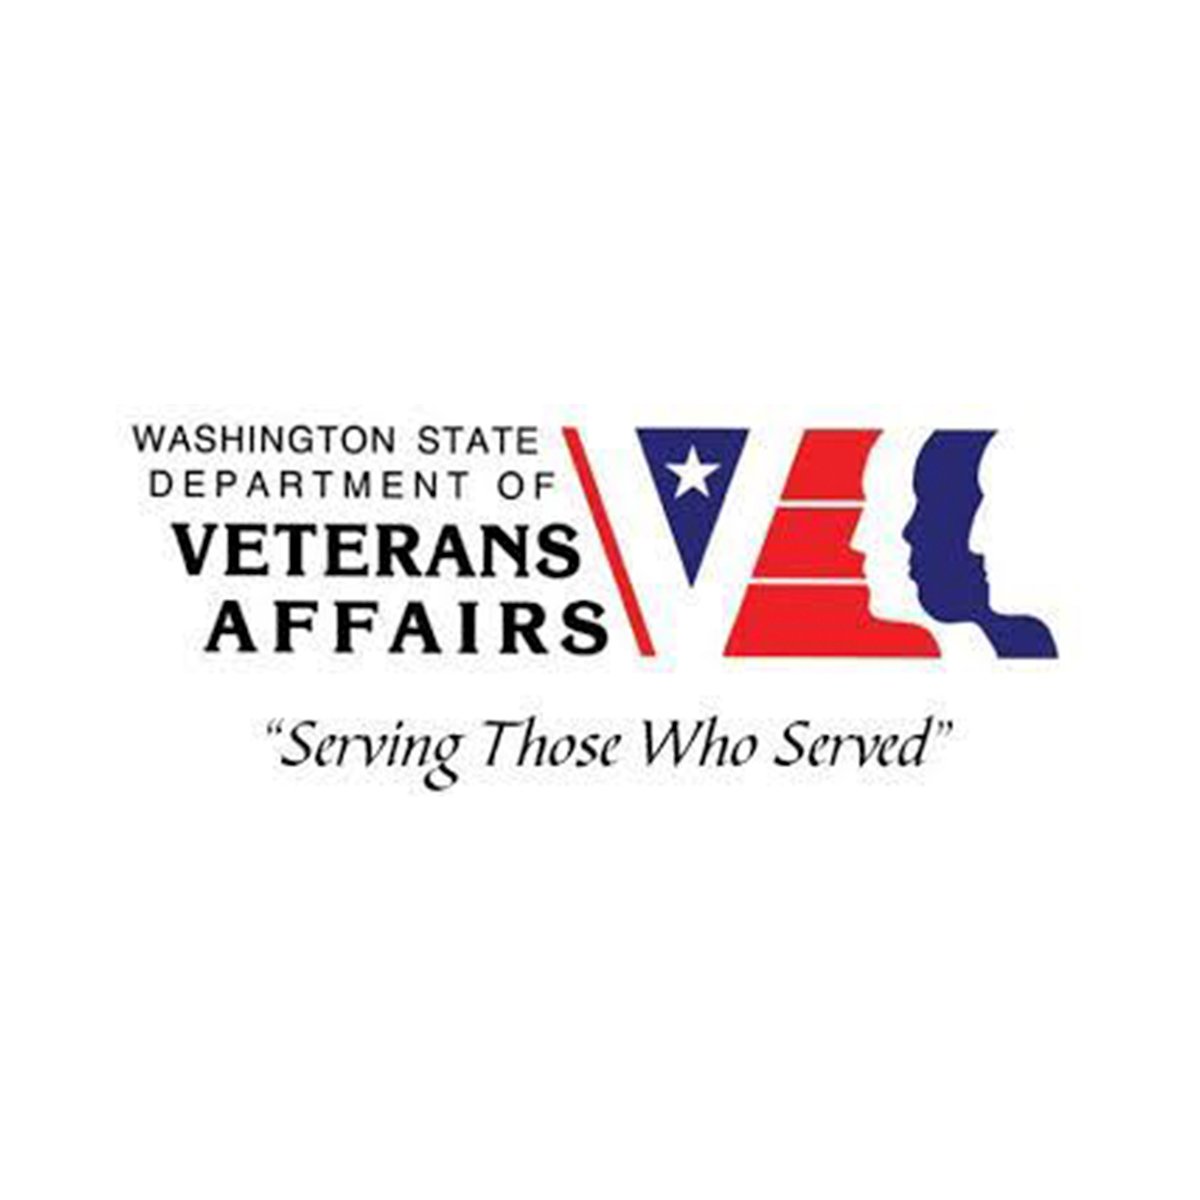 VeteransAffairs_thumb.jpg